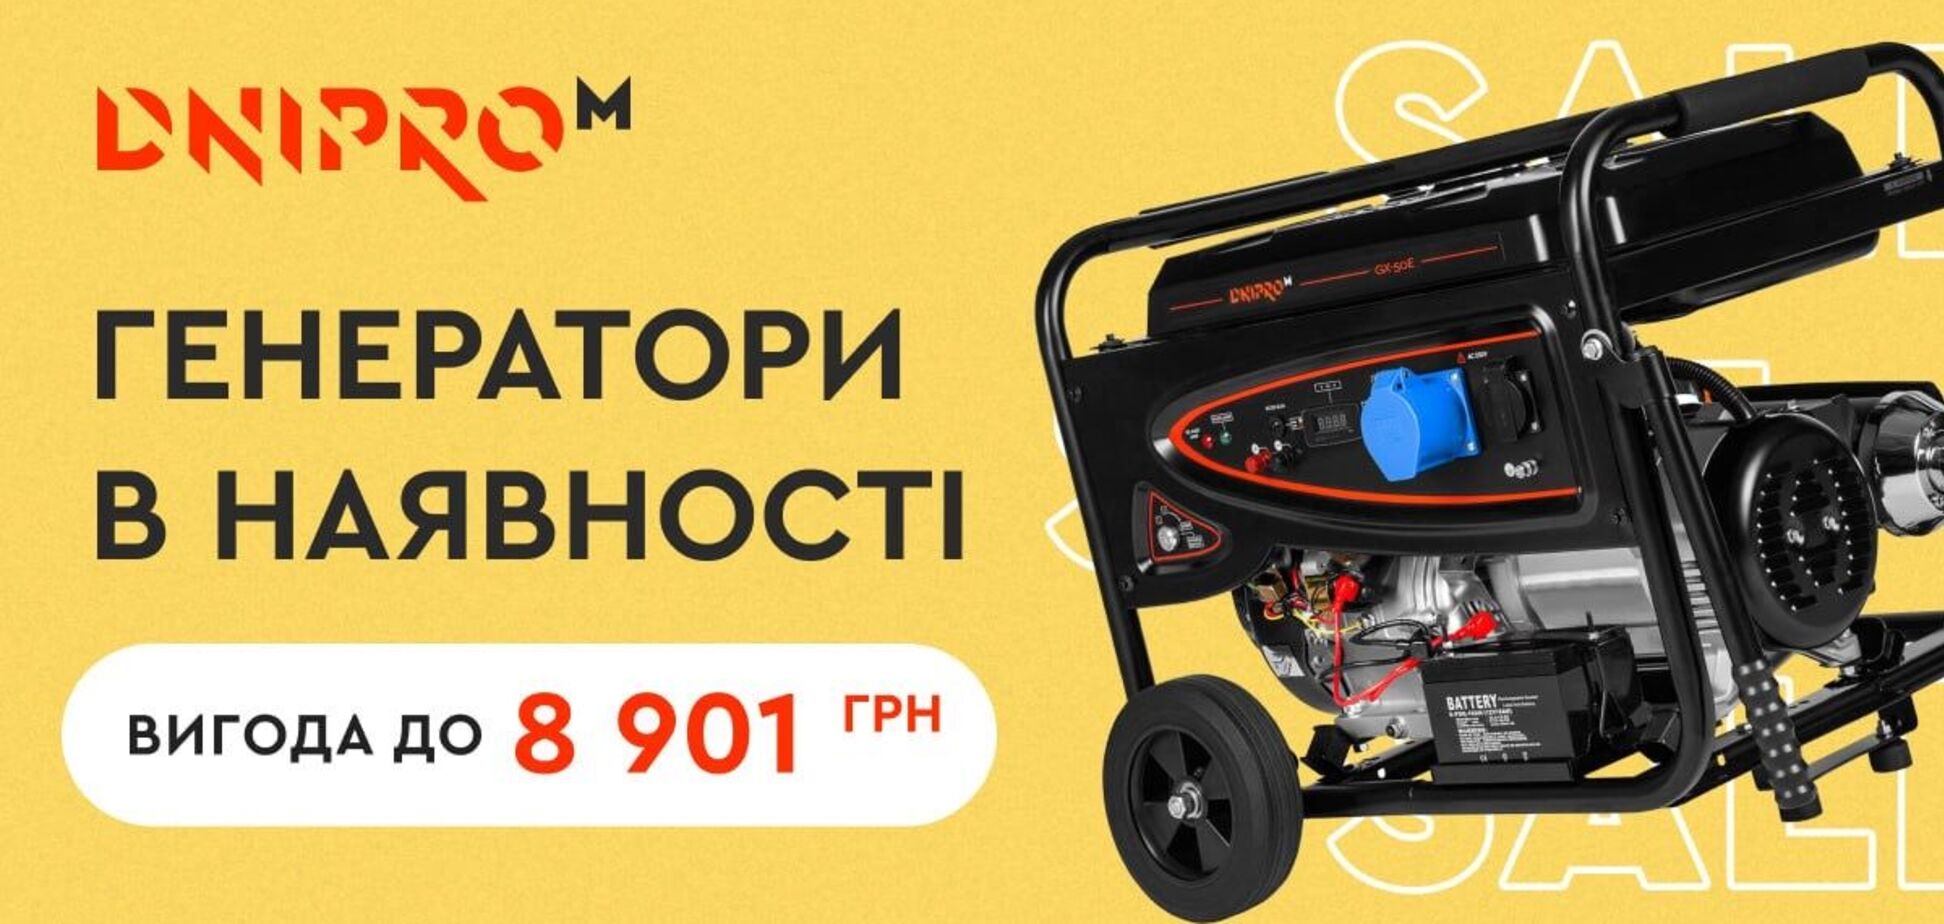 Dnipro-M анонсировал продажу генераторов по сниженной цене 